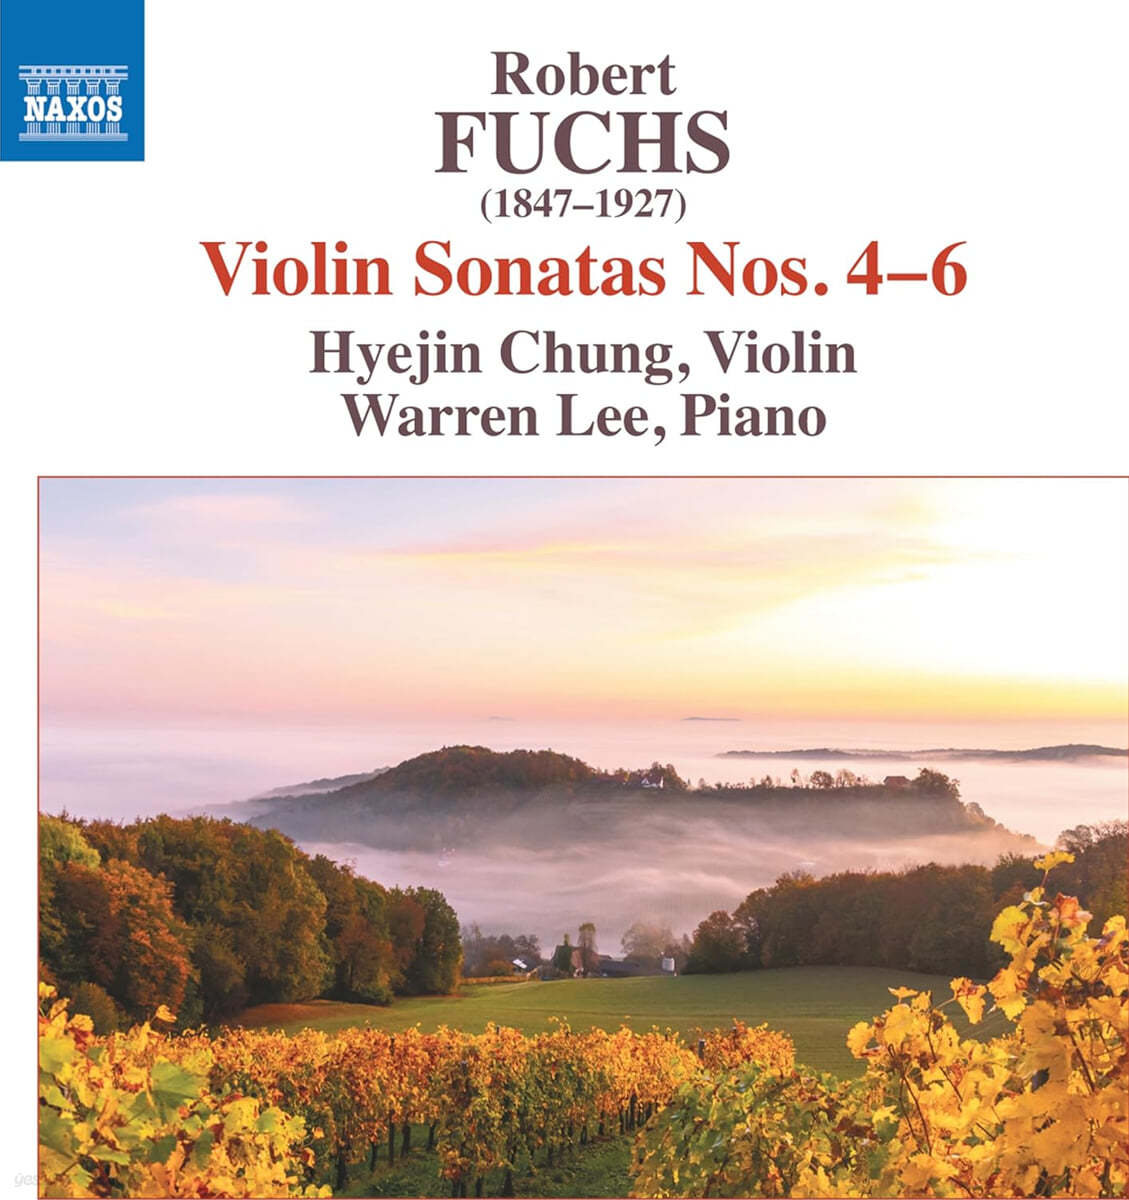 정혜진 - 로베르트 푹스: 바이올린 소나타 4, 5, 6번 (Fuchs: Violin Sonatas Op.77, Op.95, Op.103)